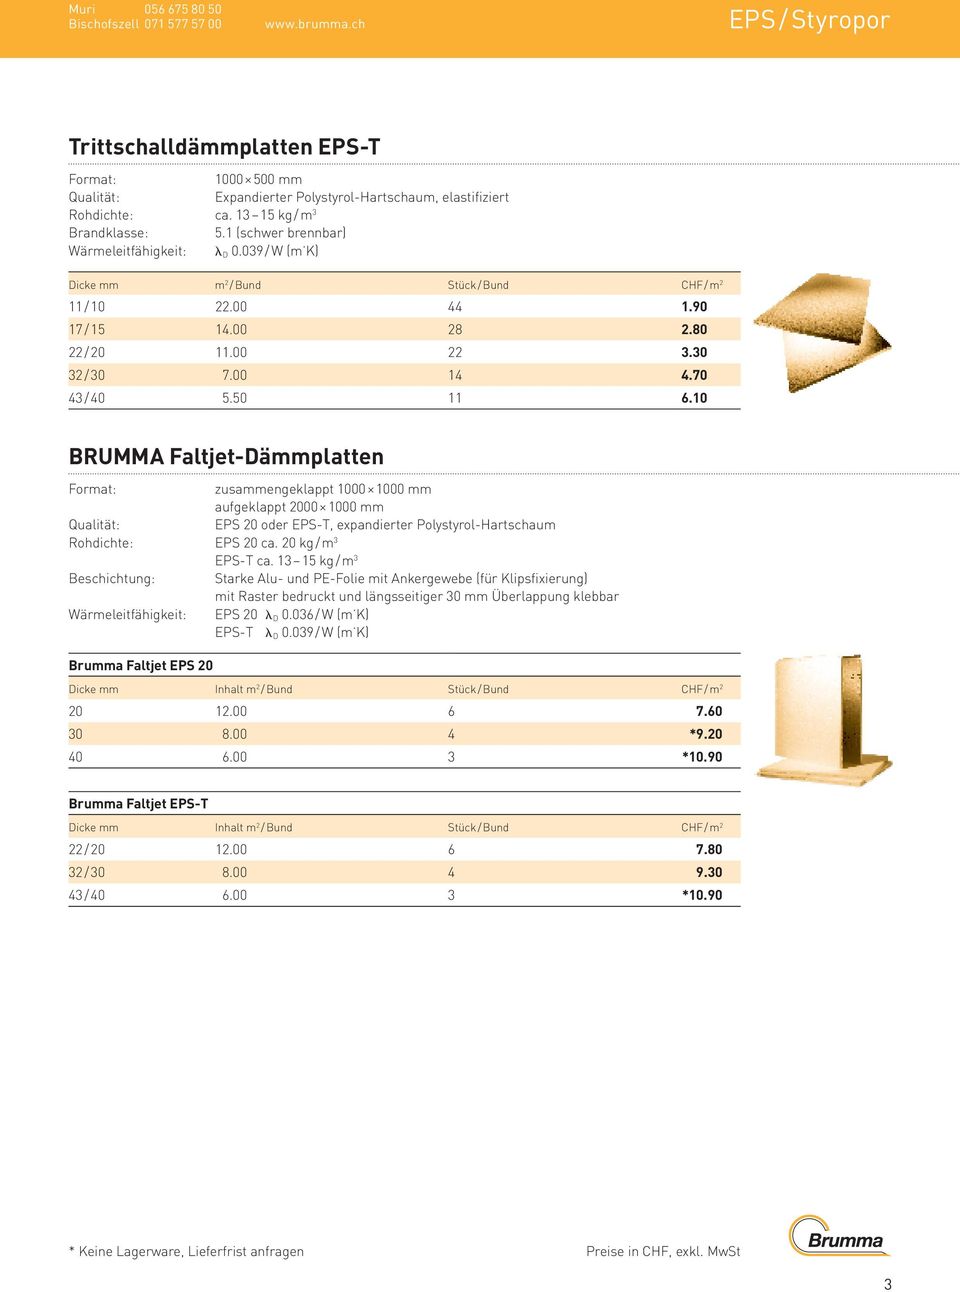 70 43 / 40 5.50 11 6.10 BRUMMA Faltjet-Dämmplatten zusammengeklappt 1000 1000 mm aufgeklappt 2000 1000 mm Qualität: EPS 20 oder EPS-T, expandierter Polystyrol-Hartschaum Rohdichte: EPS 20 ca.